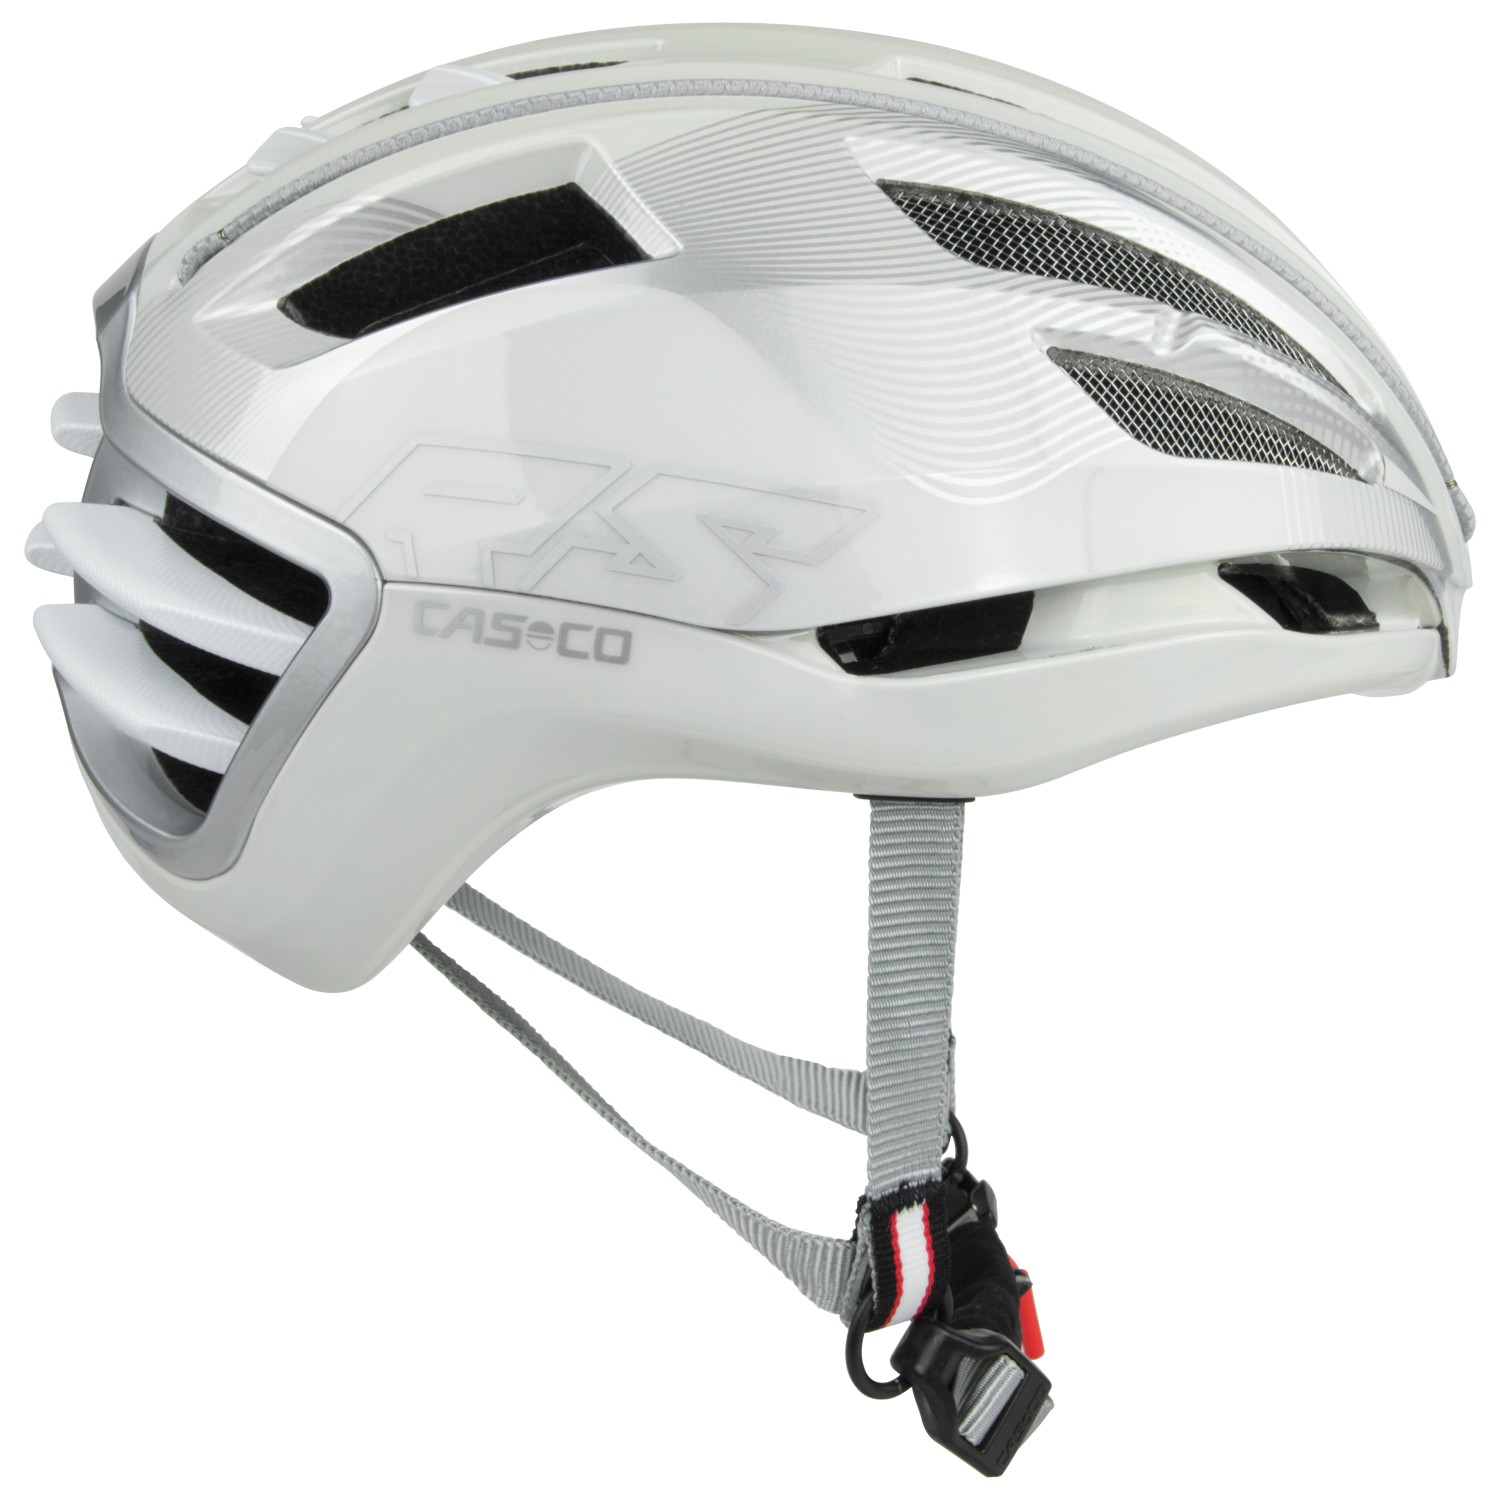 Велосипедный шлем Casco Speedairo2, цвет White/Silver козырек на шлем для мотоциклетного шлема k5 k5s k3sv k1 защита от царапин мотоциклетные аксессуары очки casco moto